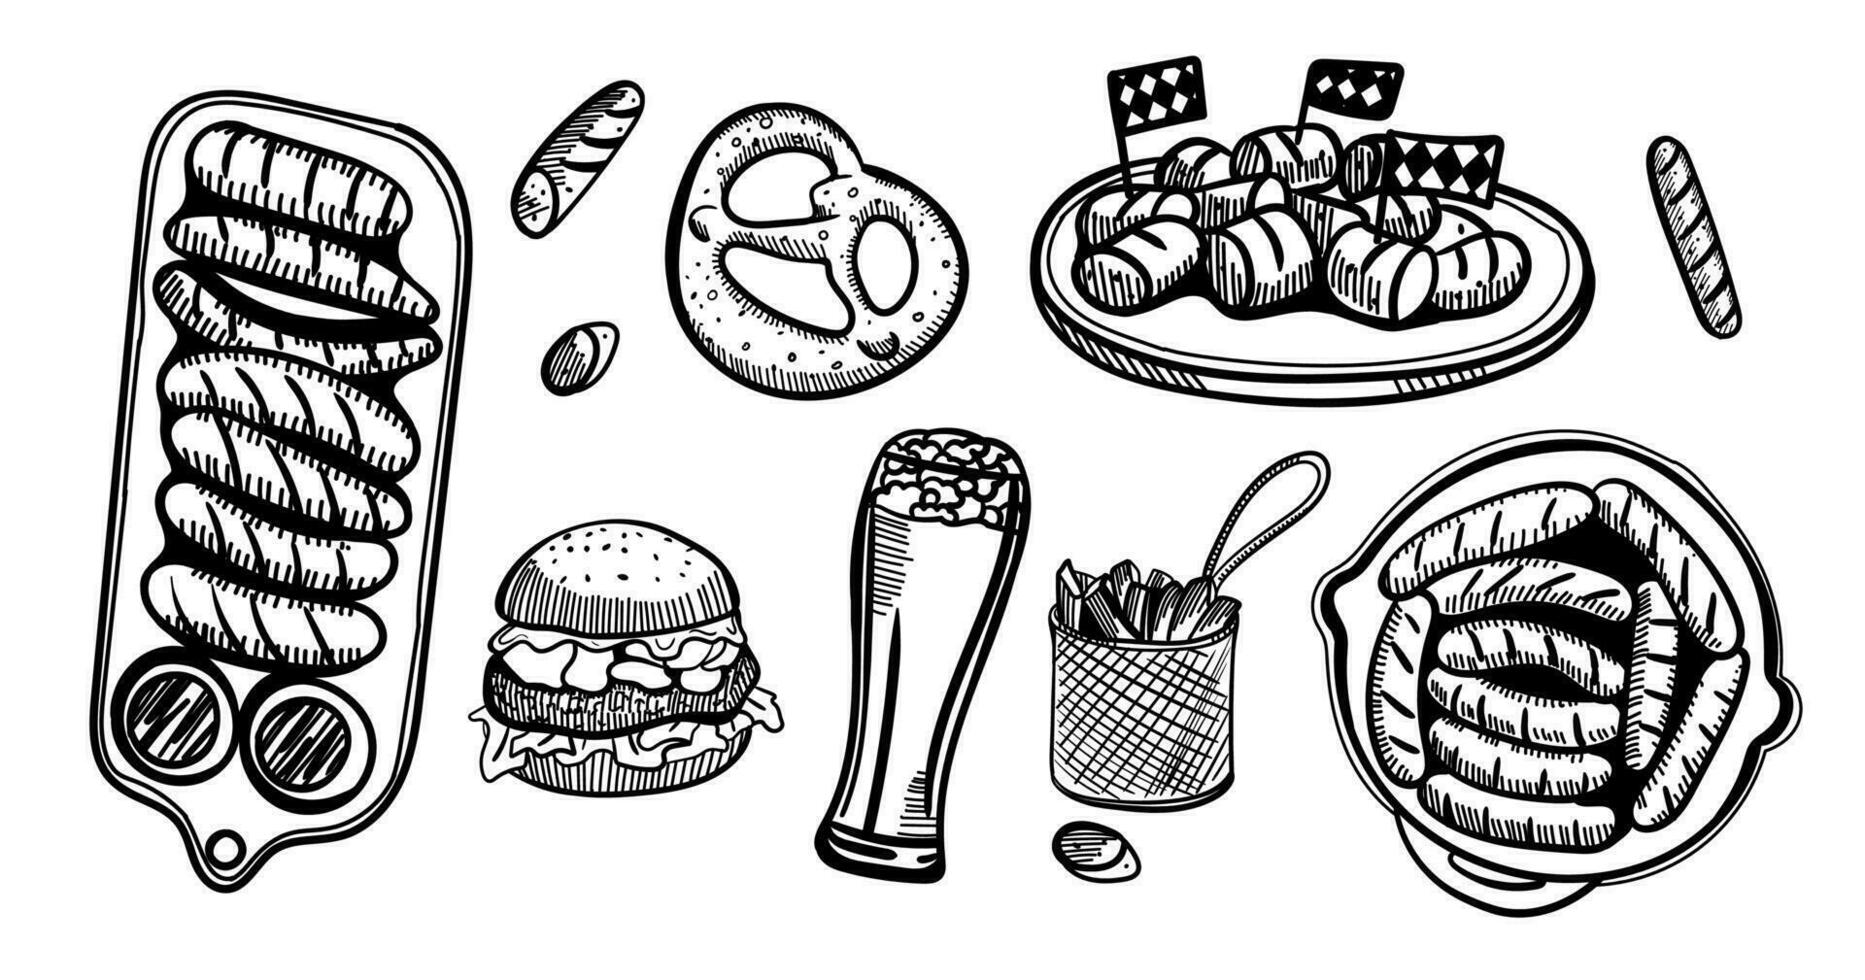 de sammansättning av drycker och snacks. uppsättning mat och öl i en glas, mugg, kopp och burk. hand teckning grafisk slag, rader skiss för oktoberfest eller meny de restaurang, pub, bistro, mellanmål bar, vektor